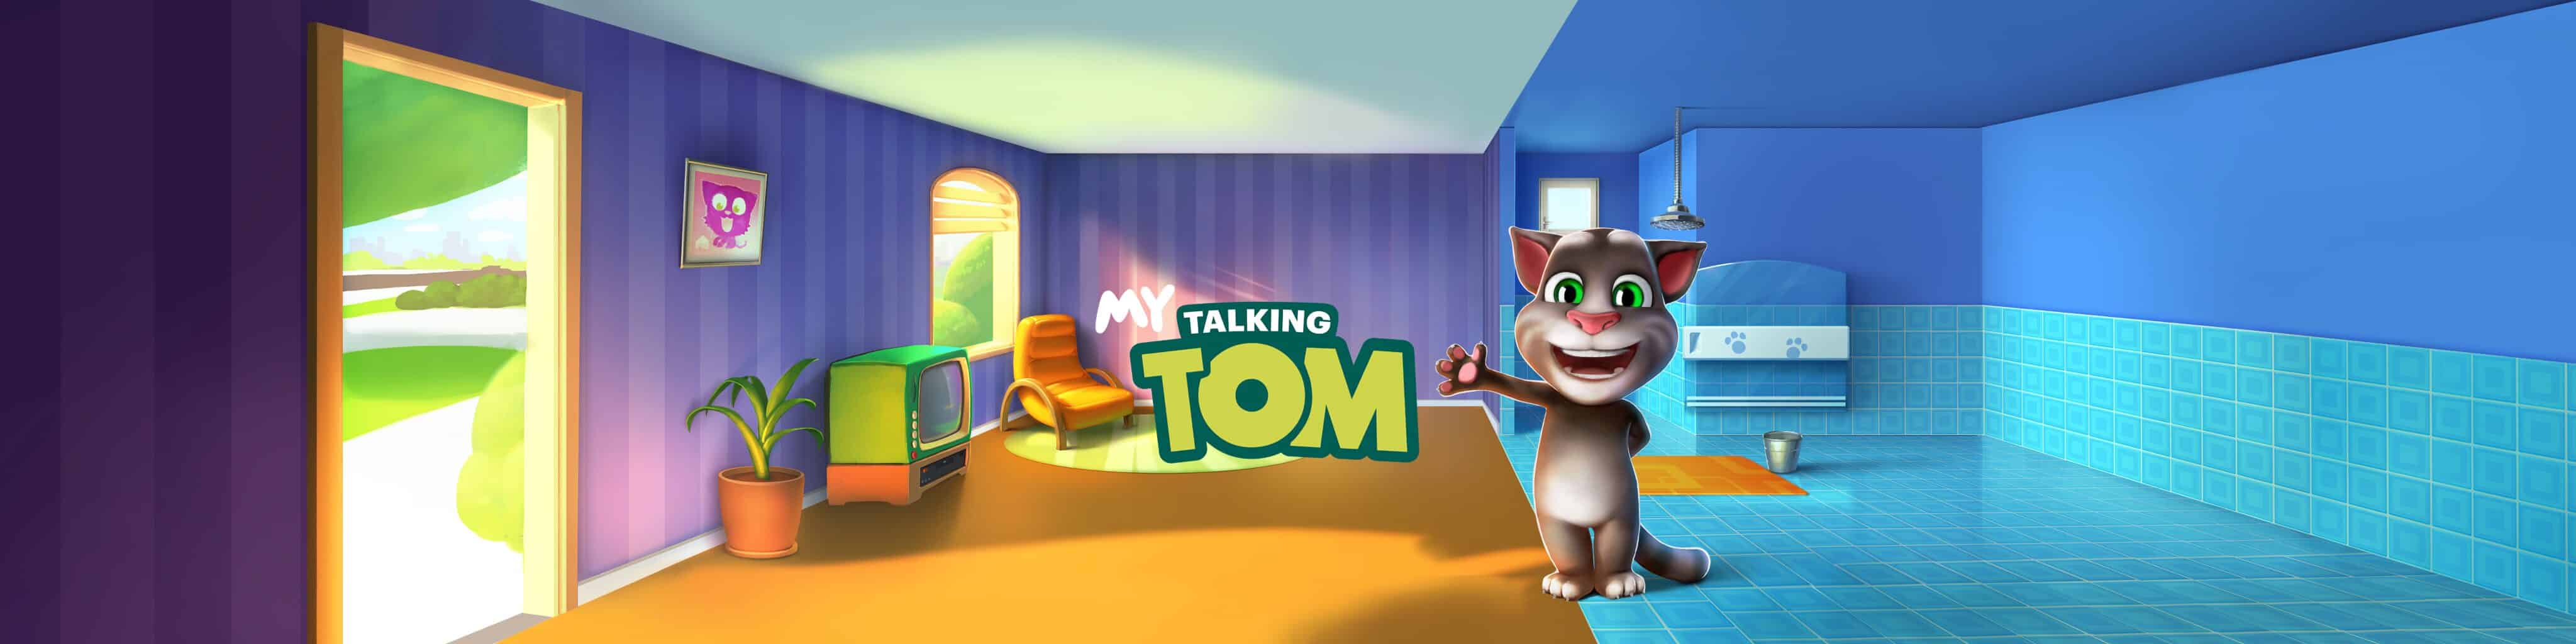 Jogo do tom, cuidando do gato tom, Meu talking tom 2, talking tom